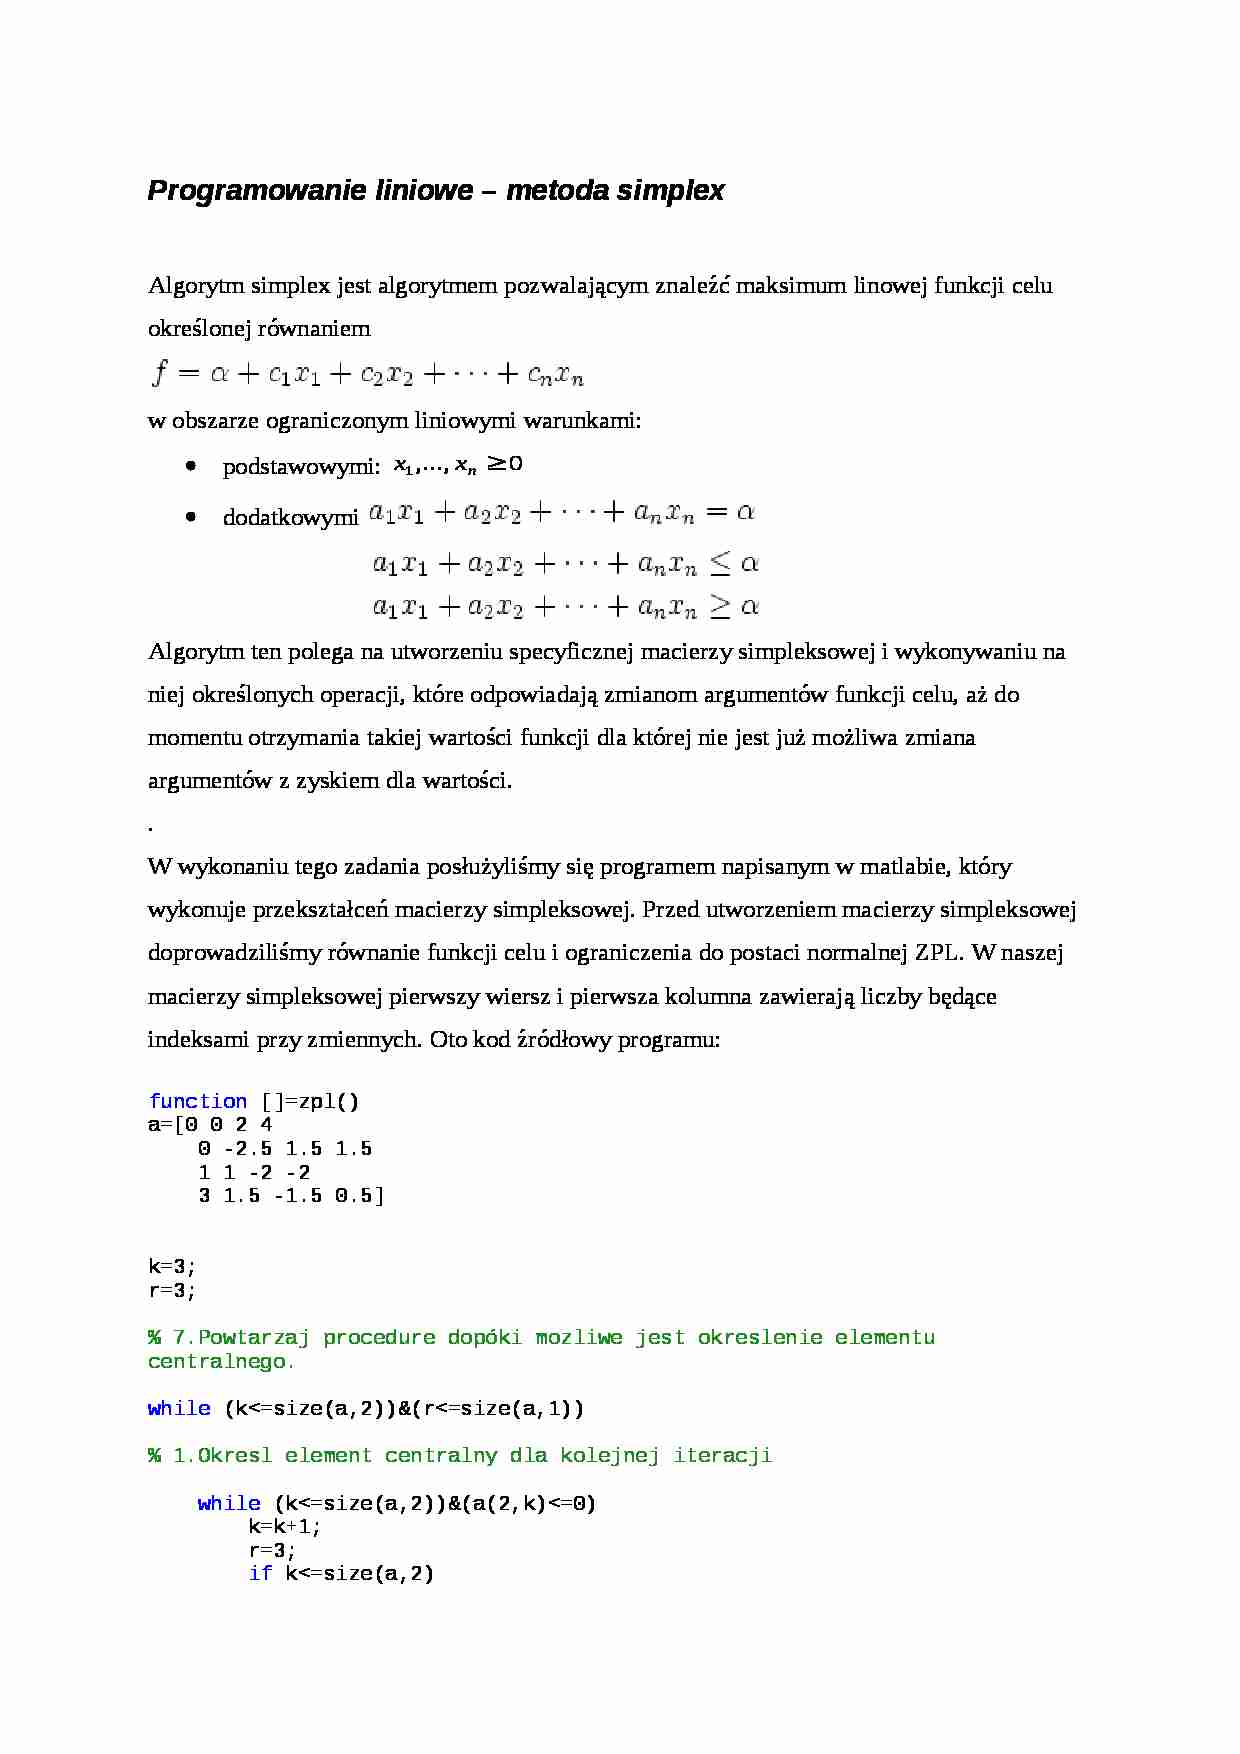 Programowanie liniowe - metoda simplex - wykład - strona 1